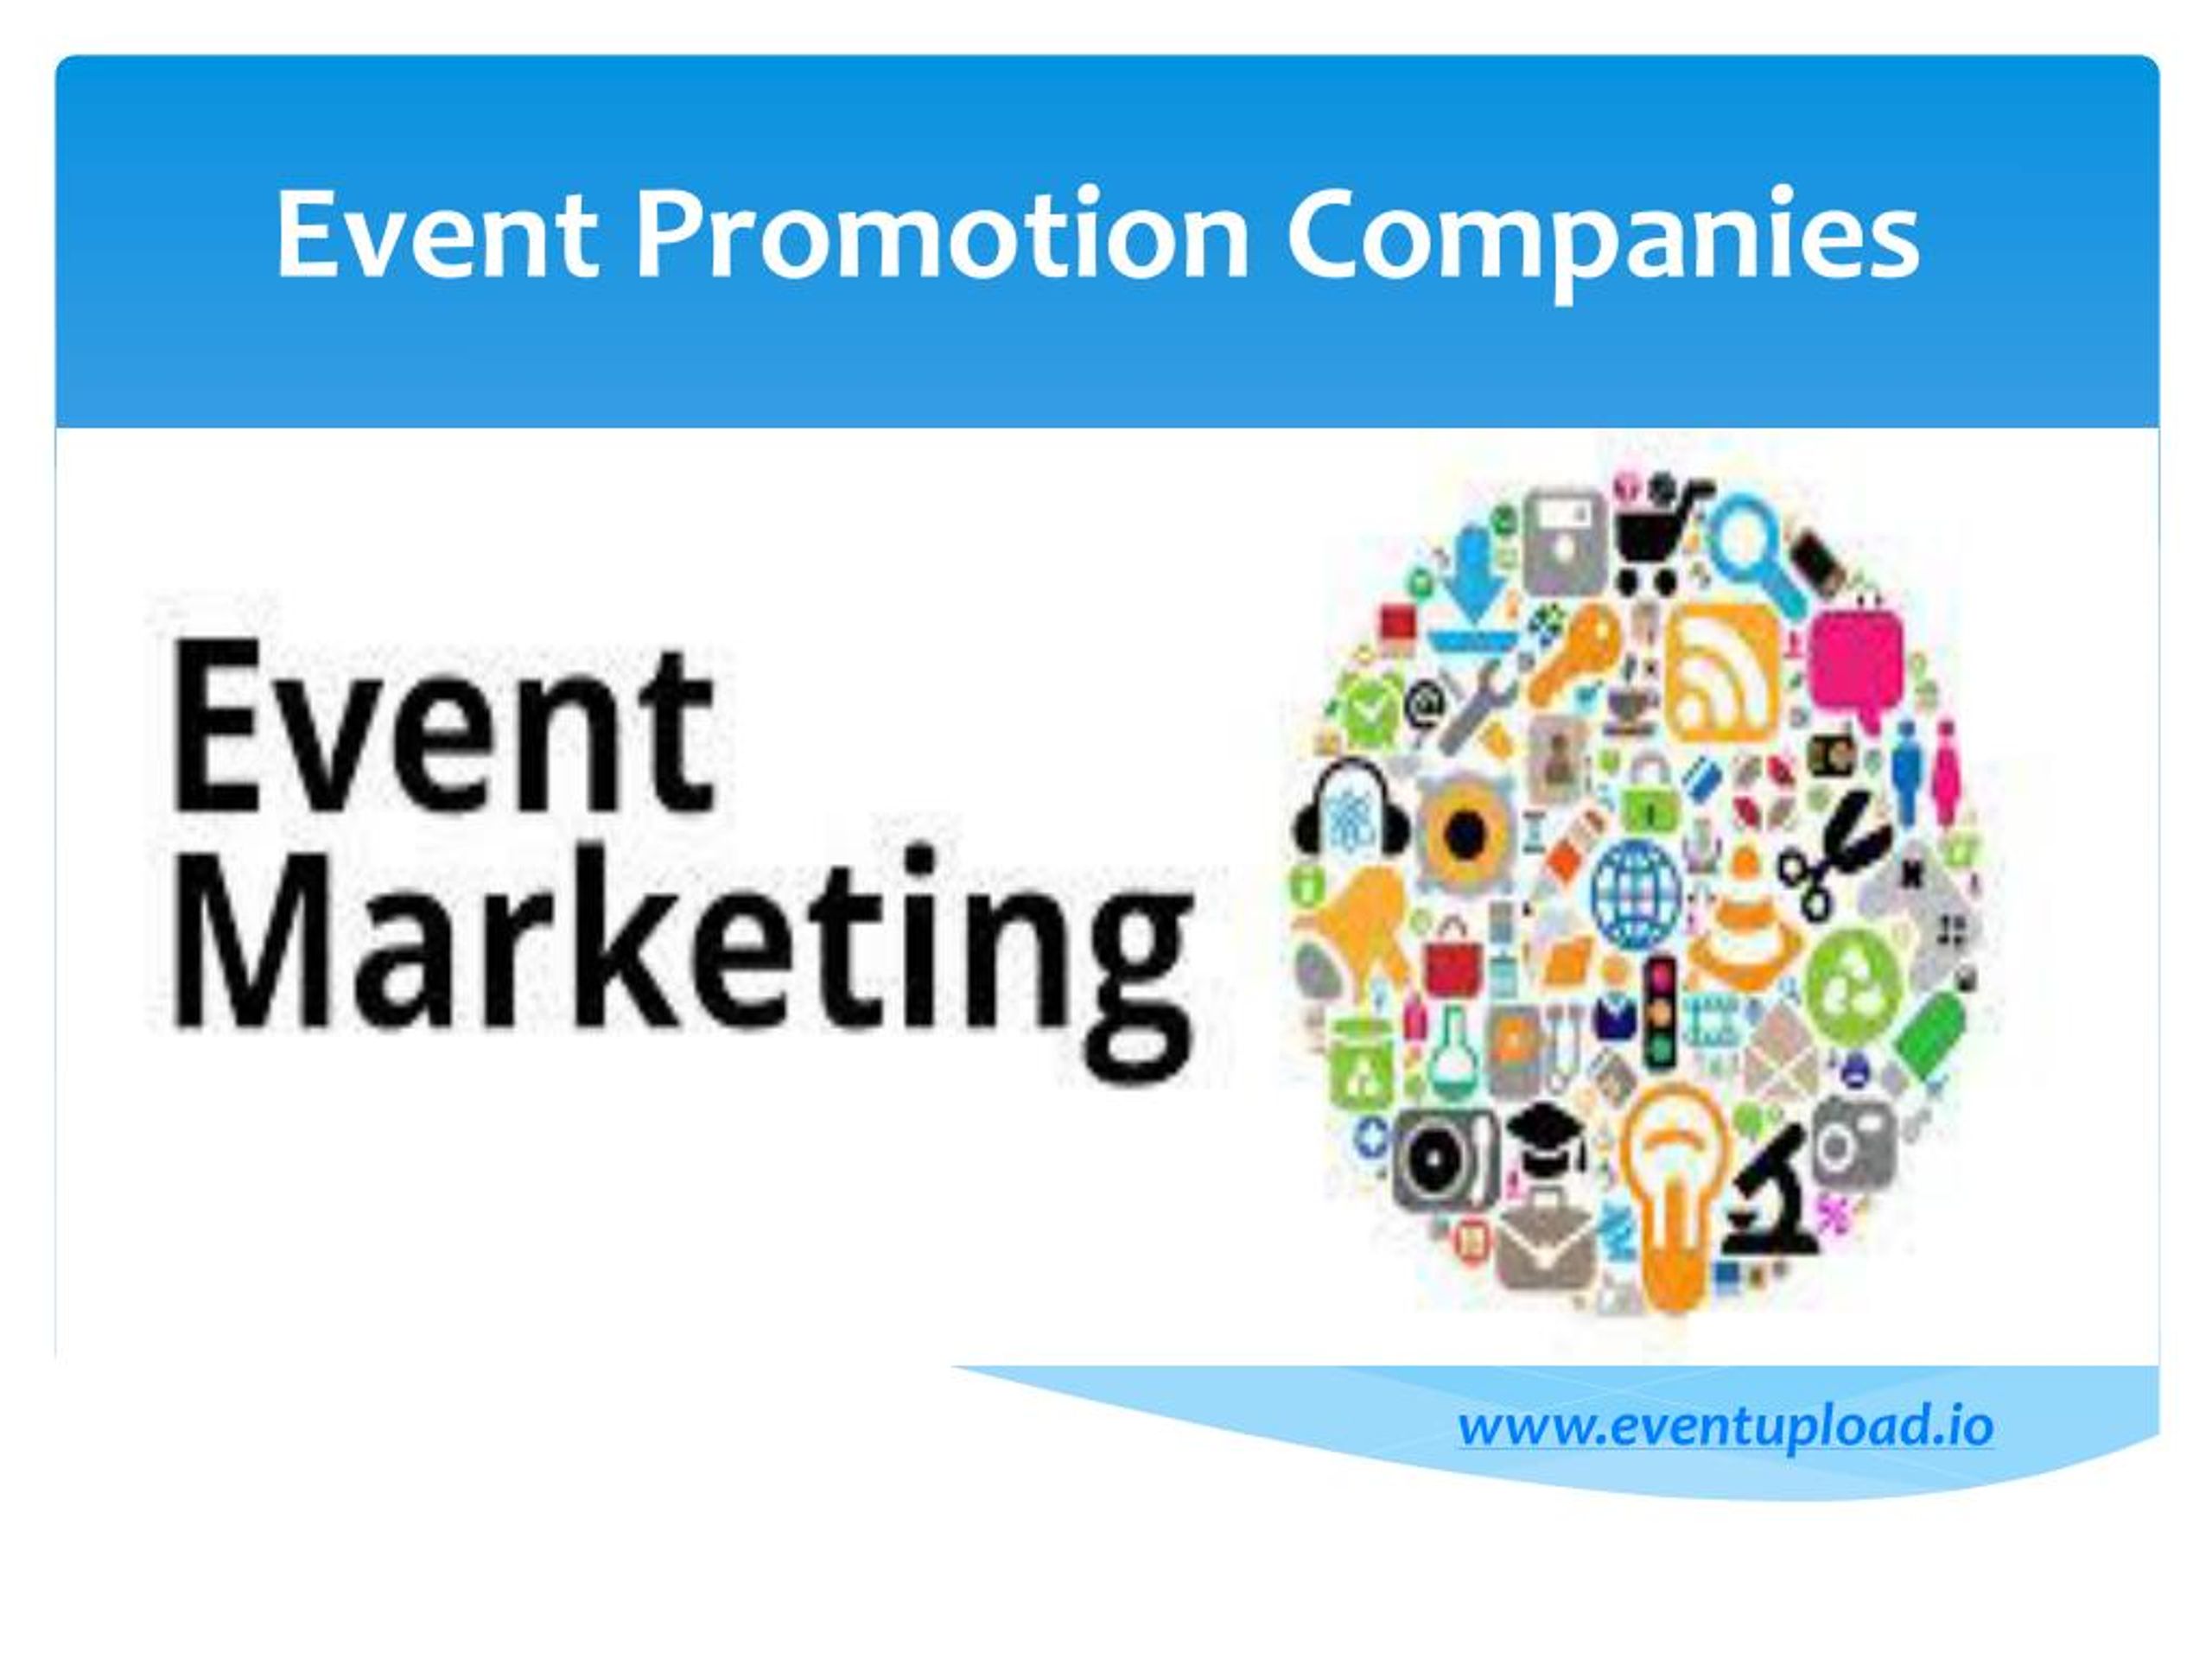 Promotions company. Ивент маркетинг. Событийный маркетинг. Event promotion. Event Promo - Business event.